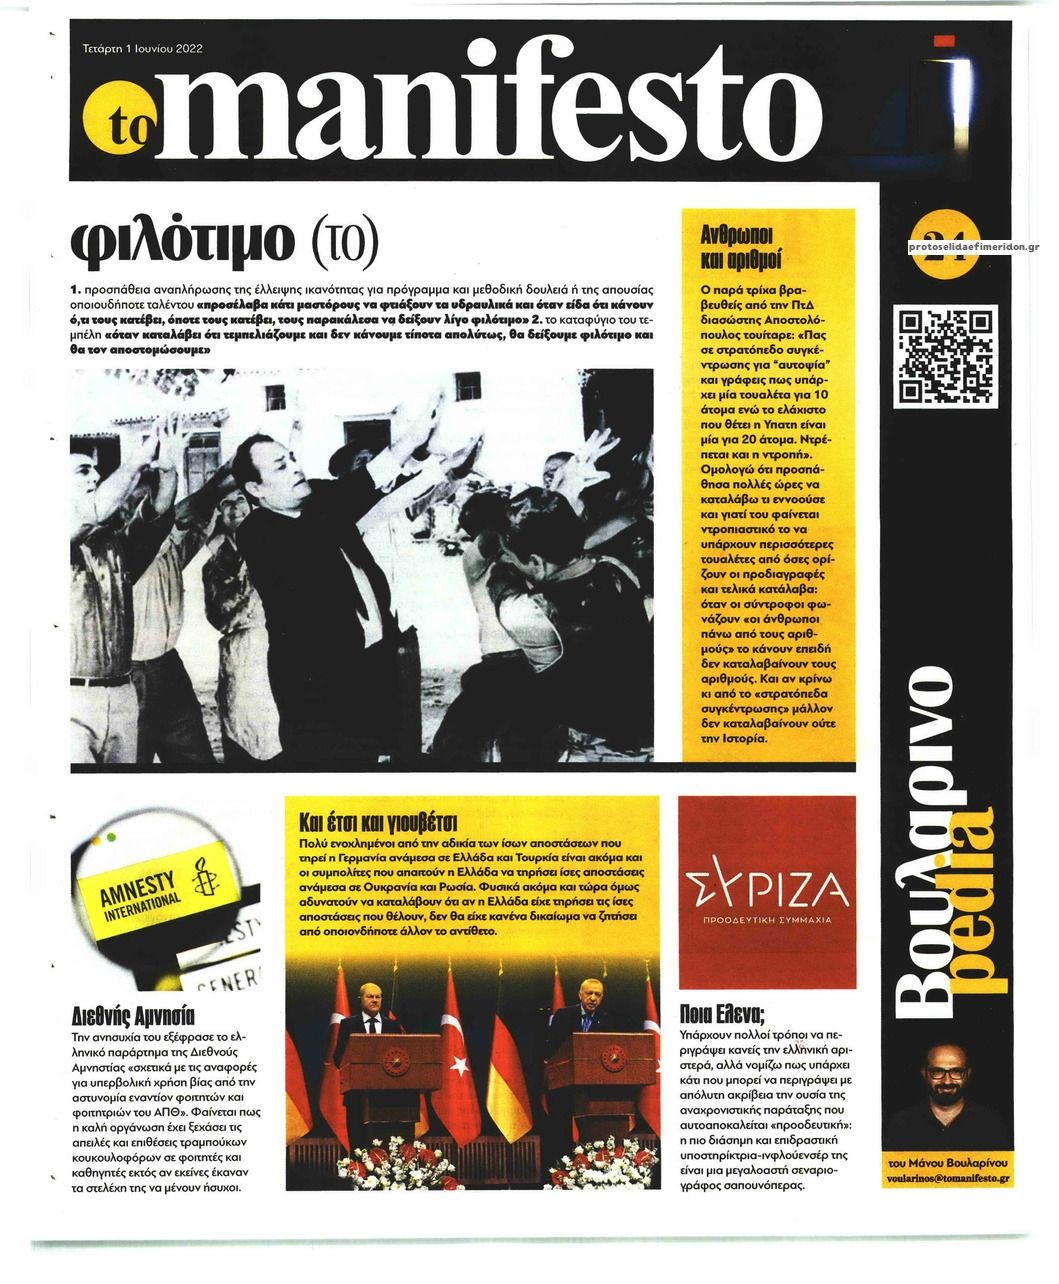 Οπισθόφυλλο εφημερίδας Το Manifesto